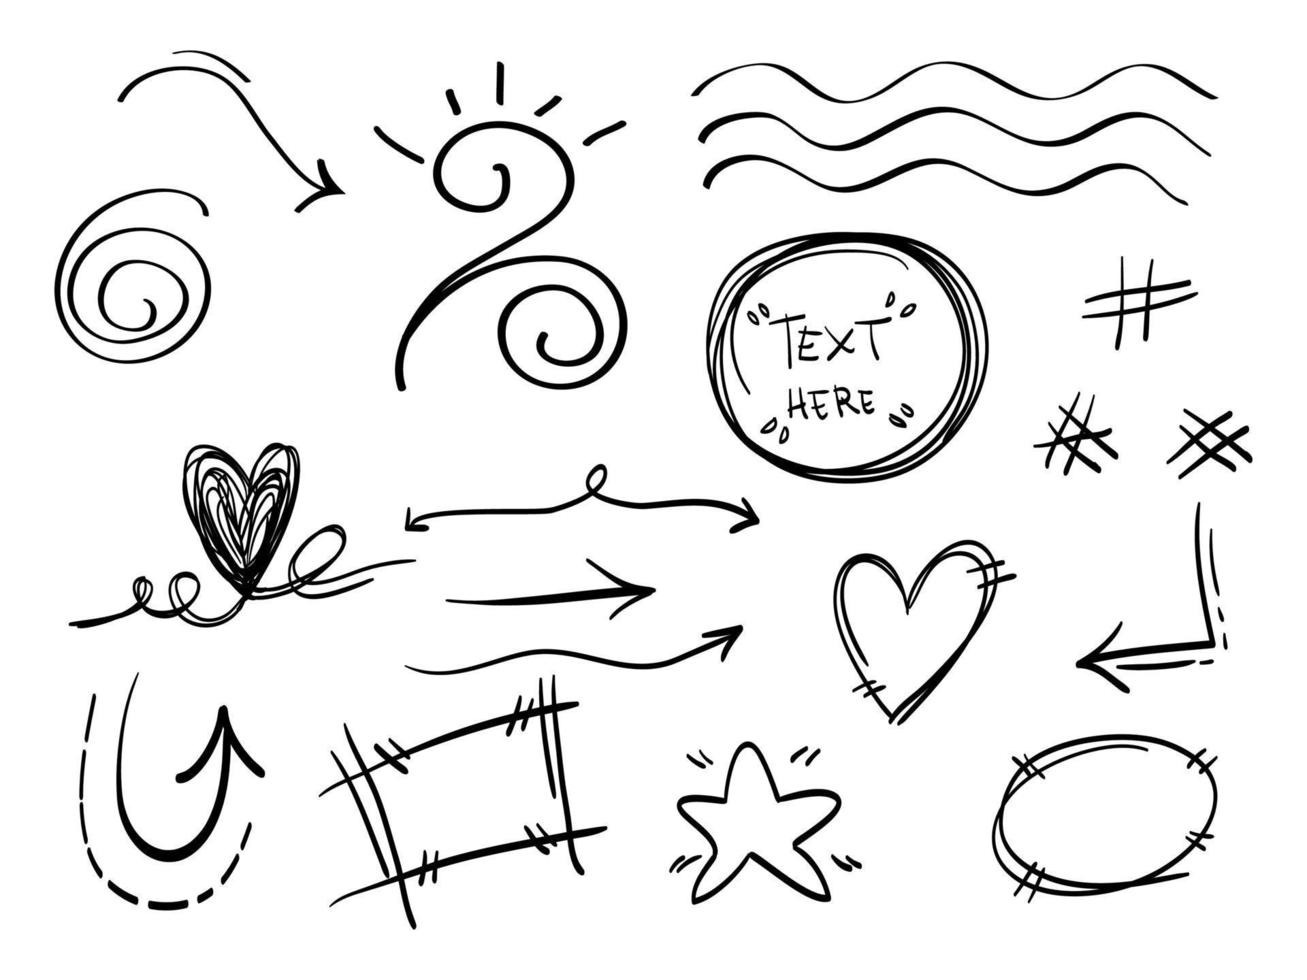 elementos de doodle para design de conceito. isolado no fundo branco. elementos infográficos. pincelada, swishes encaracolados, rusgas, redemoinho, seta, coração, coroa, estrela. ilustração vetorial. vetor